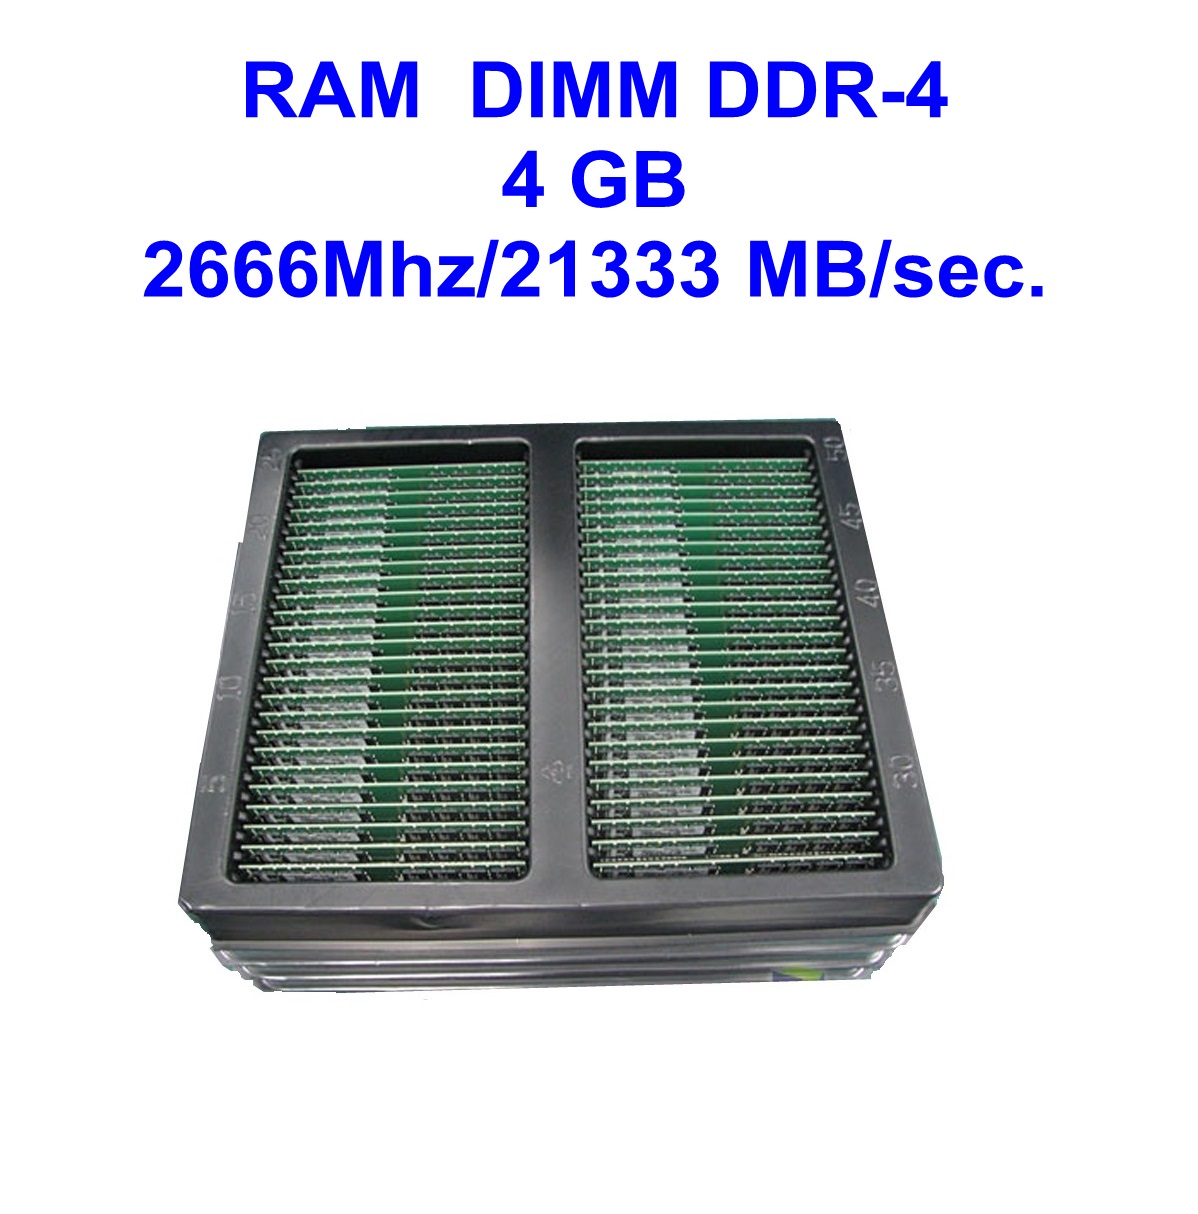 DIMM DDR-3 8 GB 1600Mhz/12800 MB/sec.